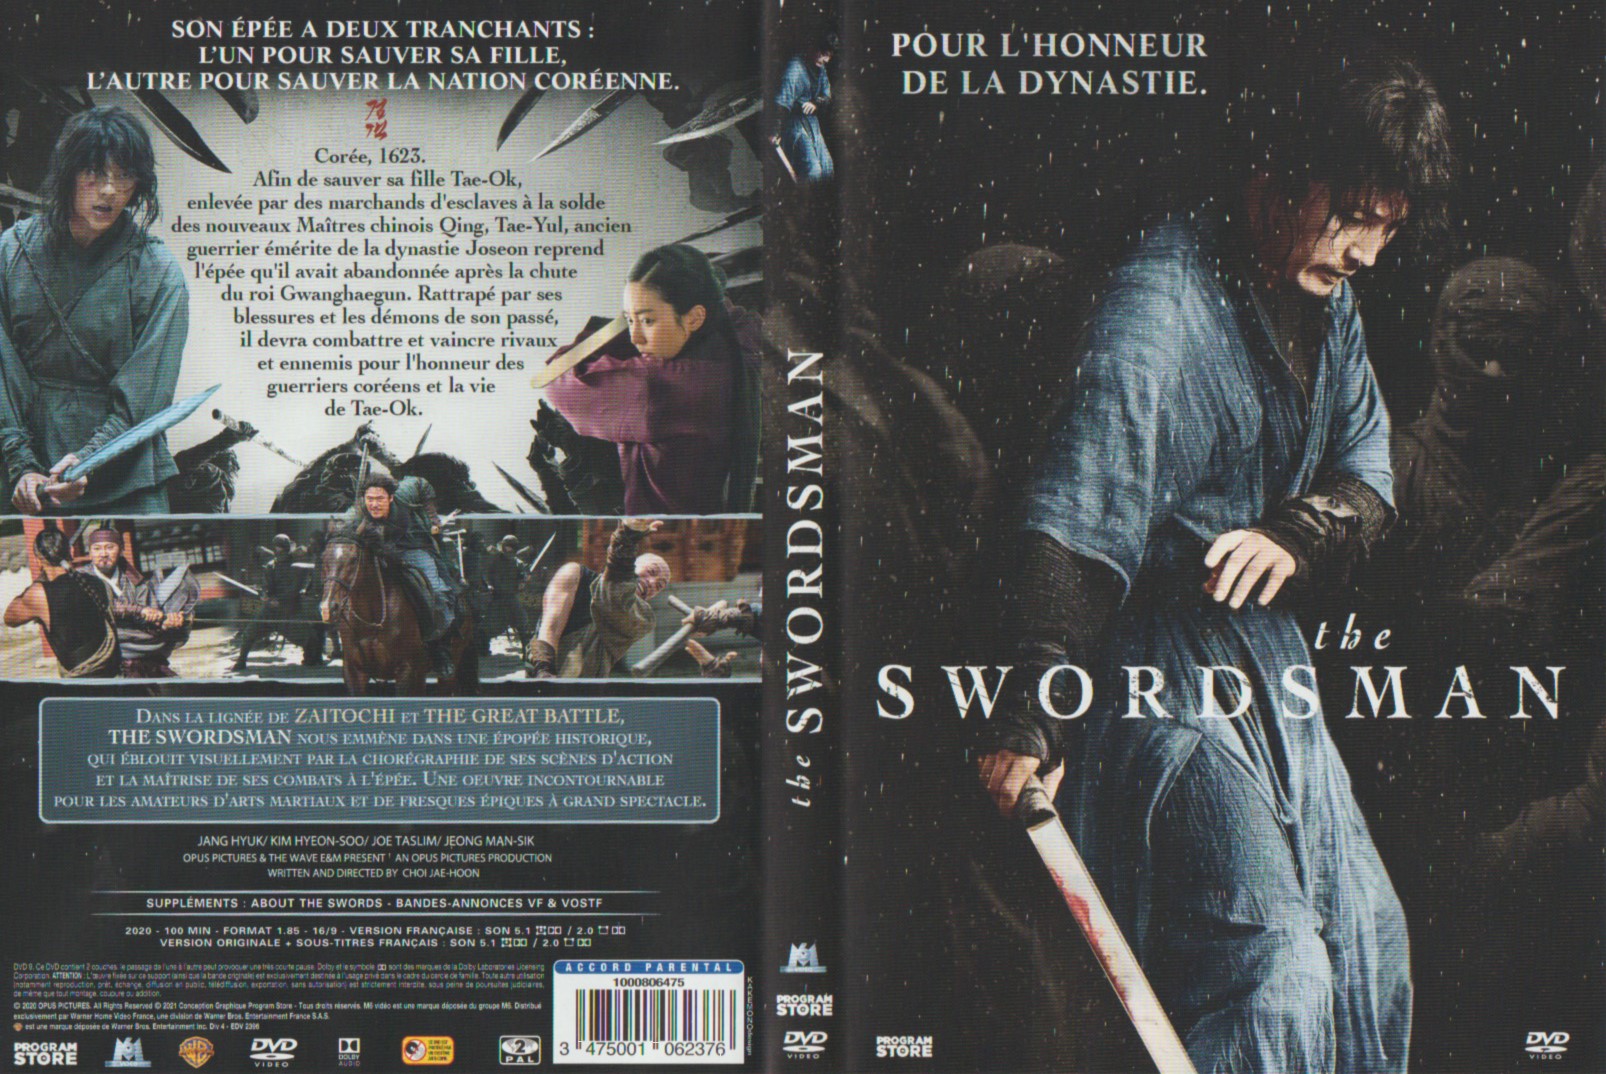 Jaquette DVD The swordsman